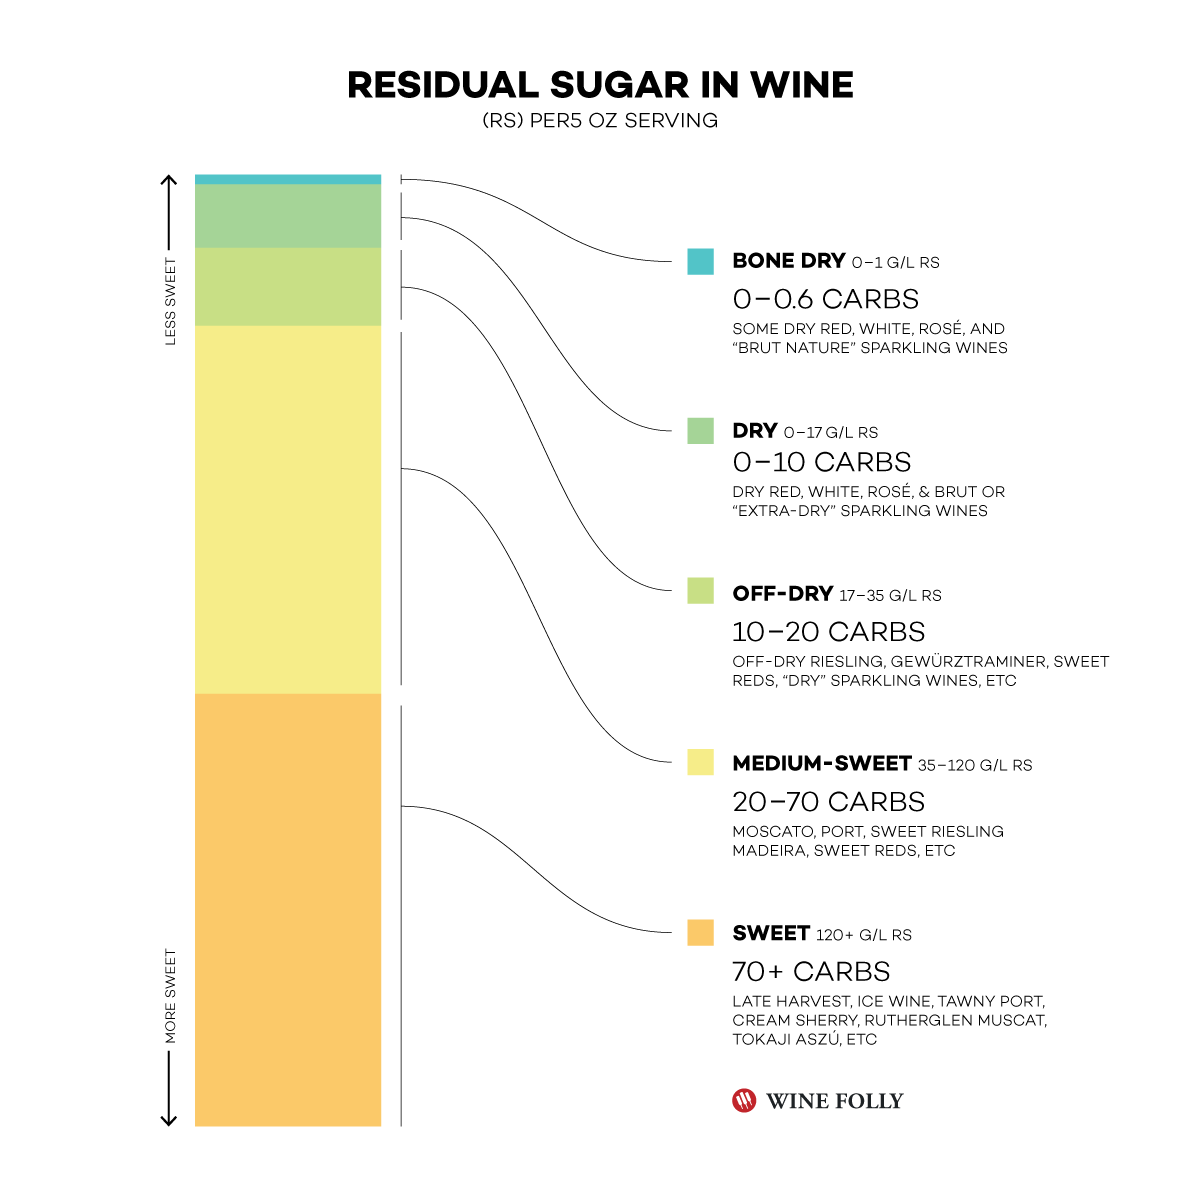 Niveaux de sucre résiduel dans différents styles de vin - Infographie par Wine Folly